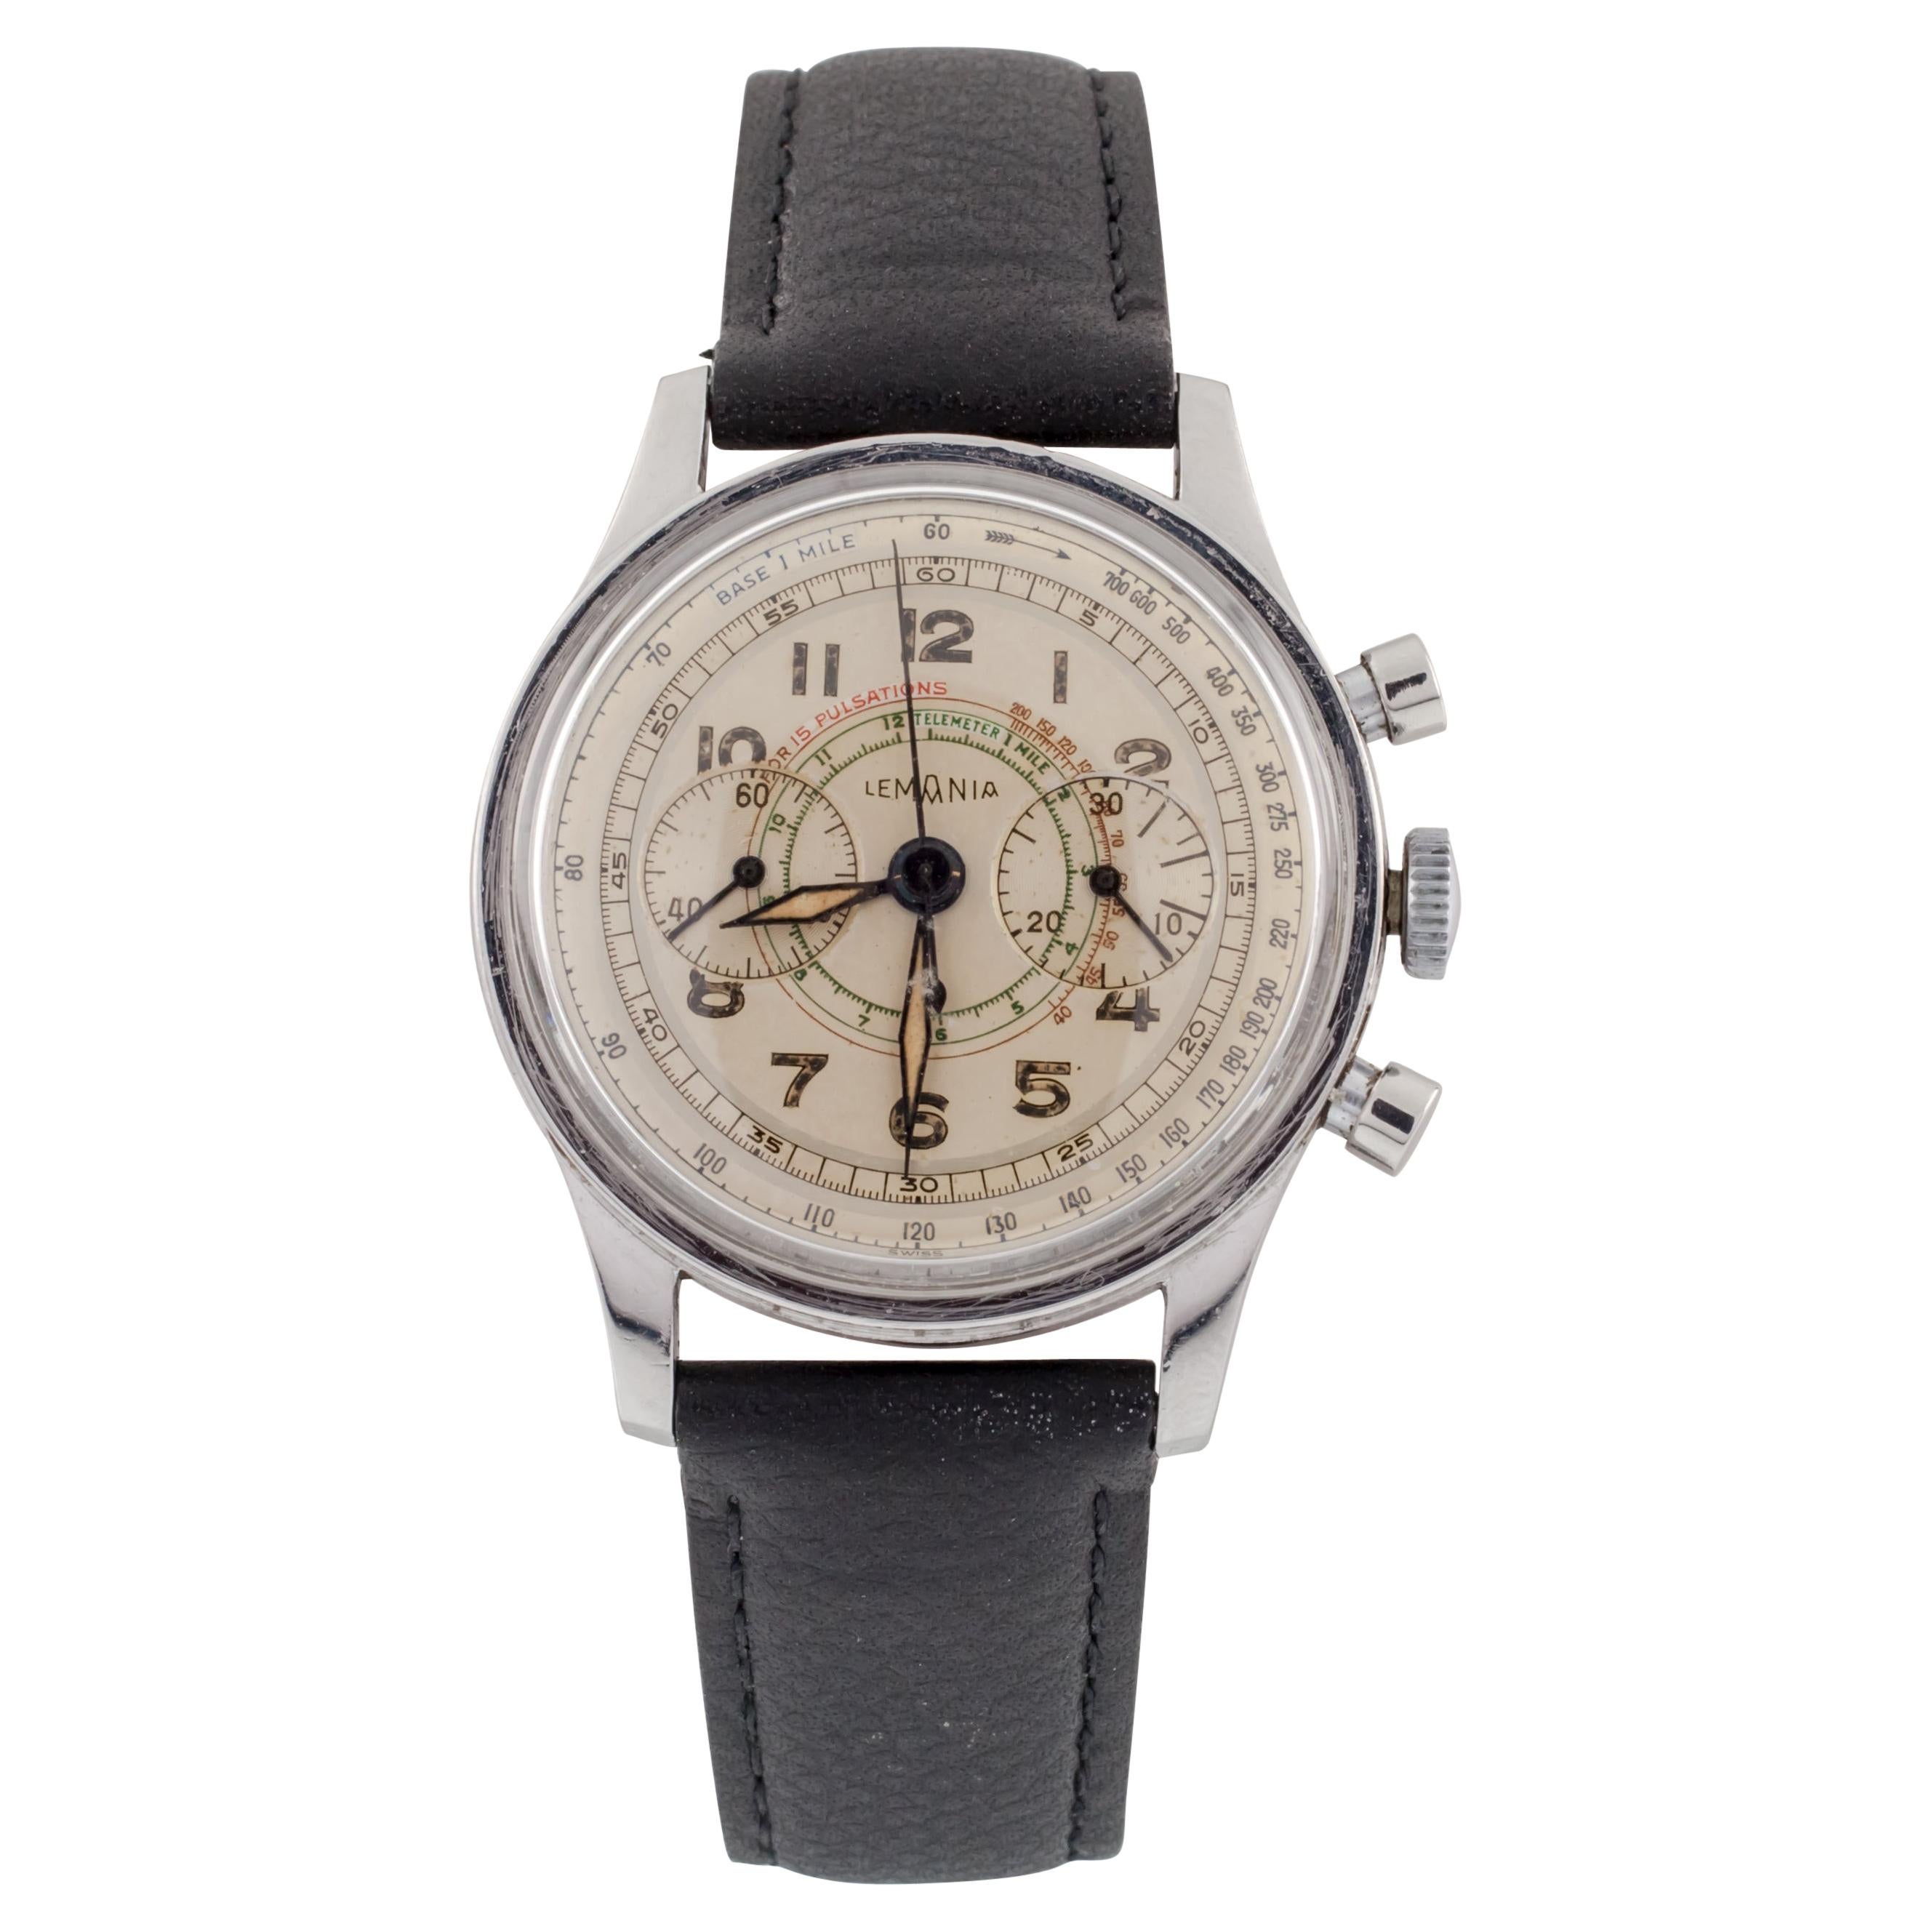 Lemania 15TL Montre chronographe en acier inoxydable avec bracelet en cuir des années 1940